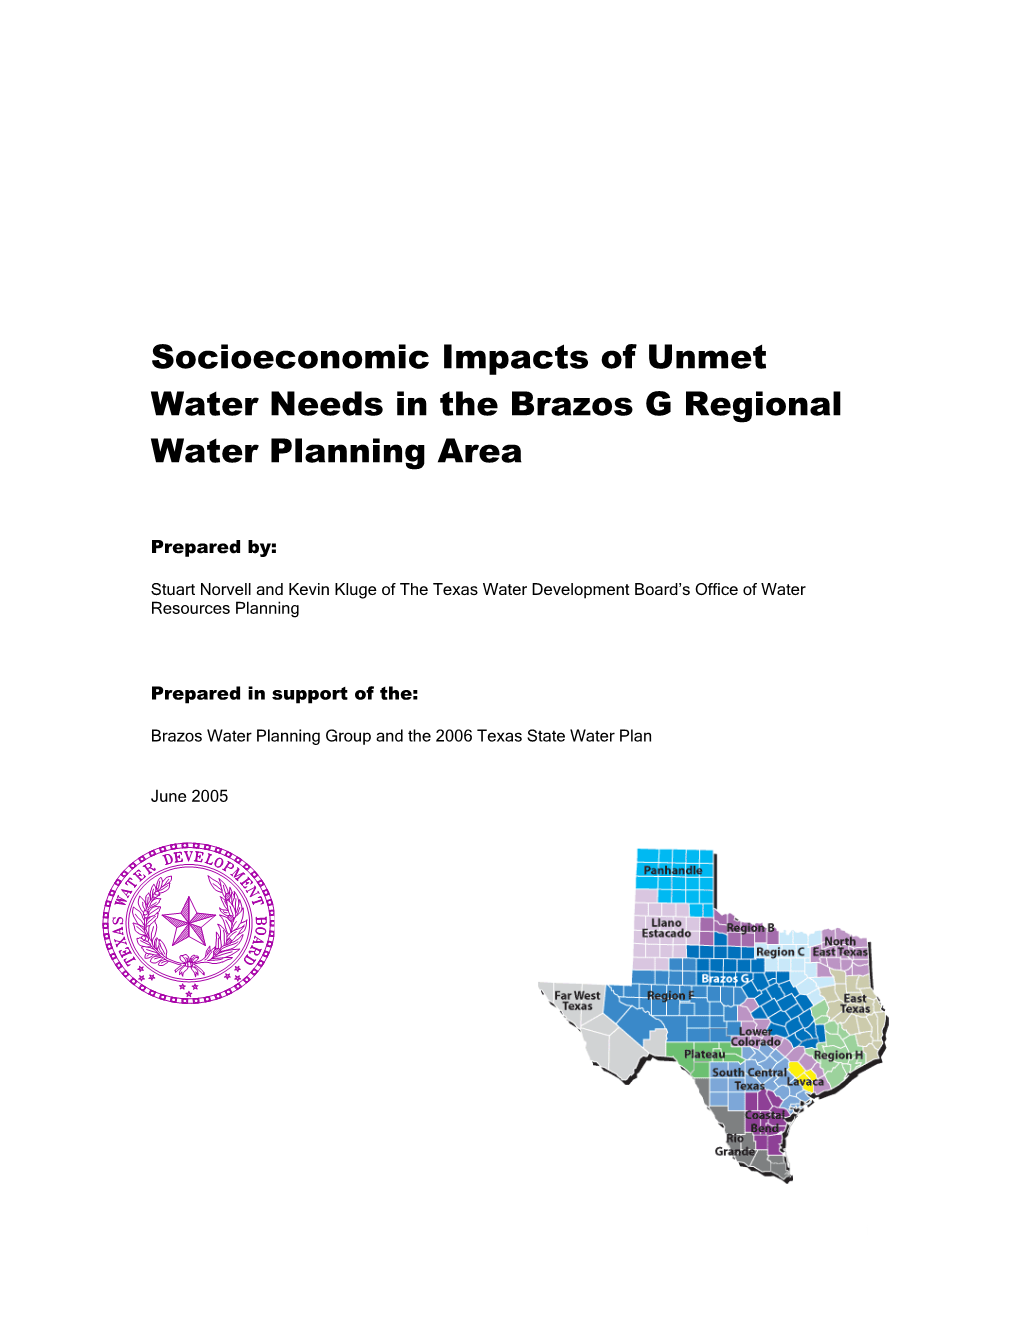 Socioeconomic Impacts of Unmet Water Needs in the Brazos G Regional Water Planning Area